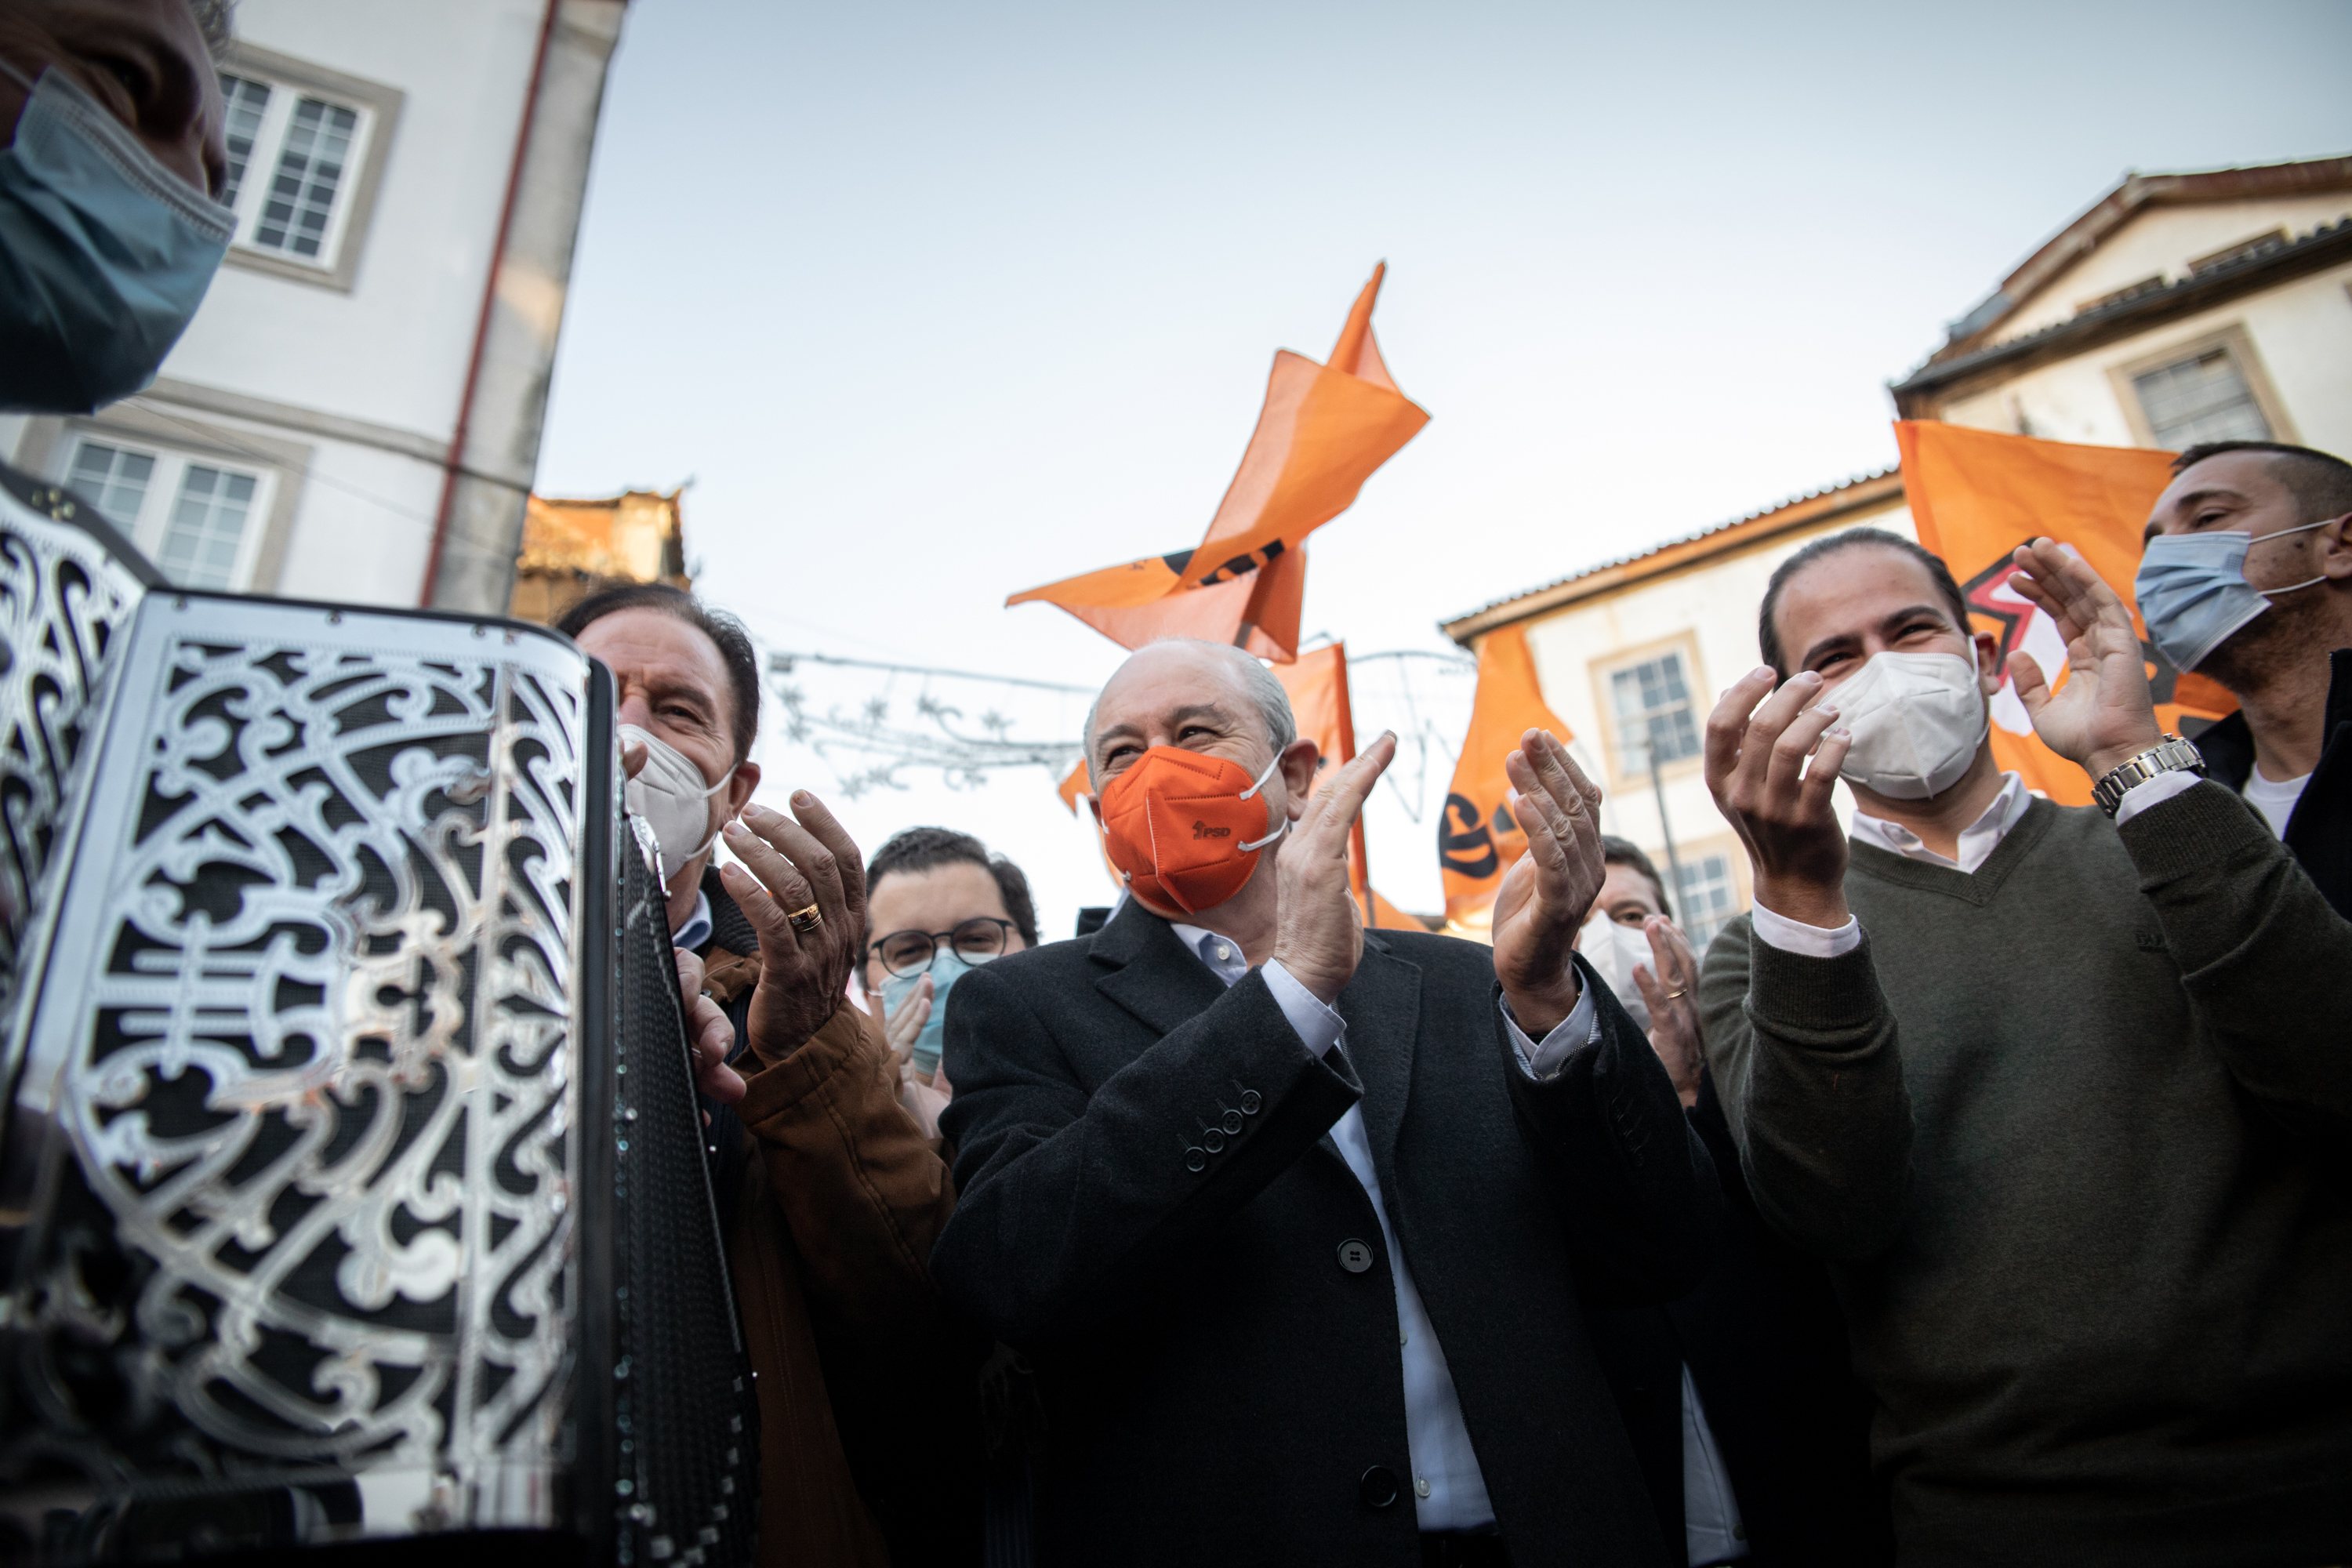 ELEIÇOES LEGISLATIVAS: Rui Rio, lider do Partido Social Democrata (PSD), durante uma arruada em Viseu. As eleições legislativas realizam-se no próximo dia 30 de Janeiro. 19 de Janeiro de 2022, Viseu. TOMÁS SILVA/OBSERVADOR